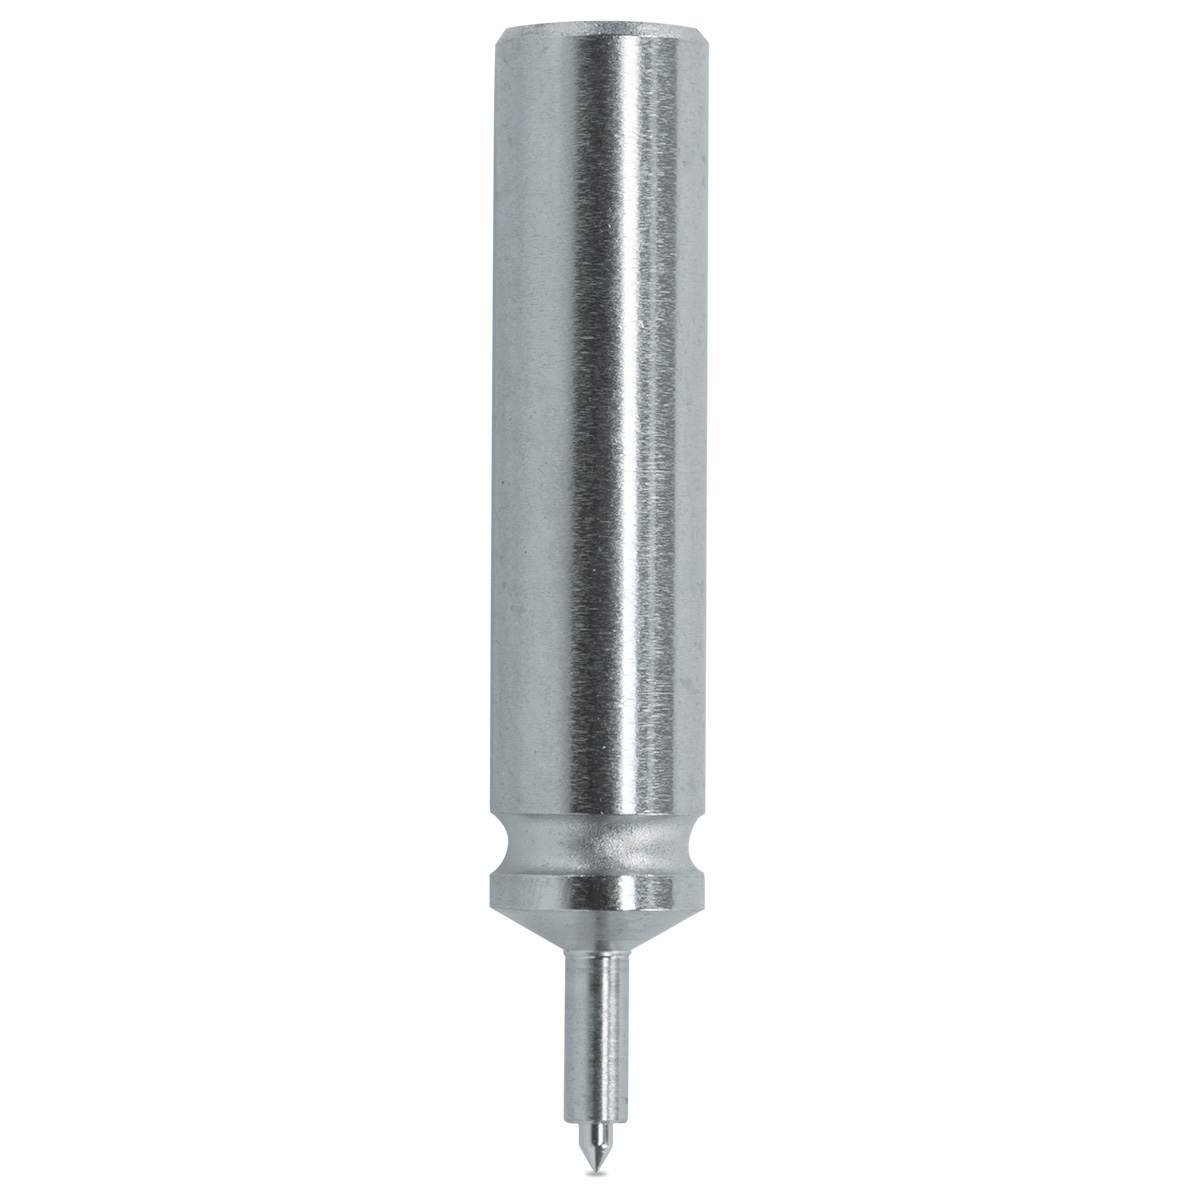 Pump pusher Horia 1000-04 N° 90, Ø body 4 mm, Ø tip 0,5 mm, support Ø 0,85 mm